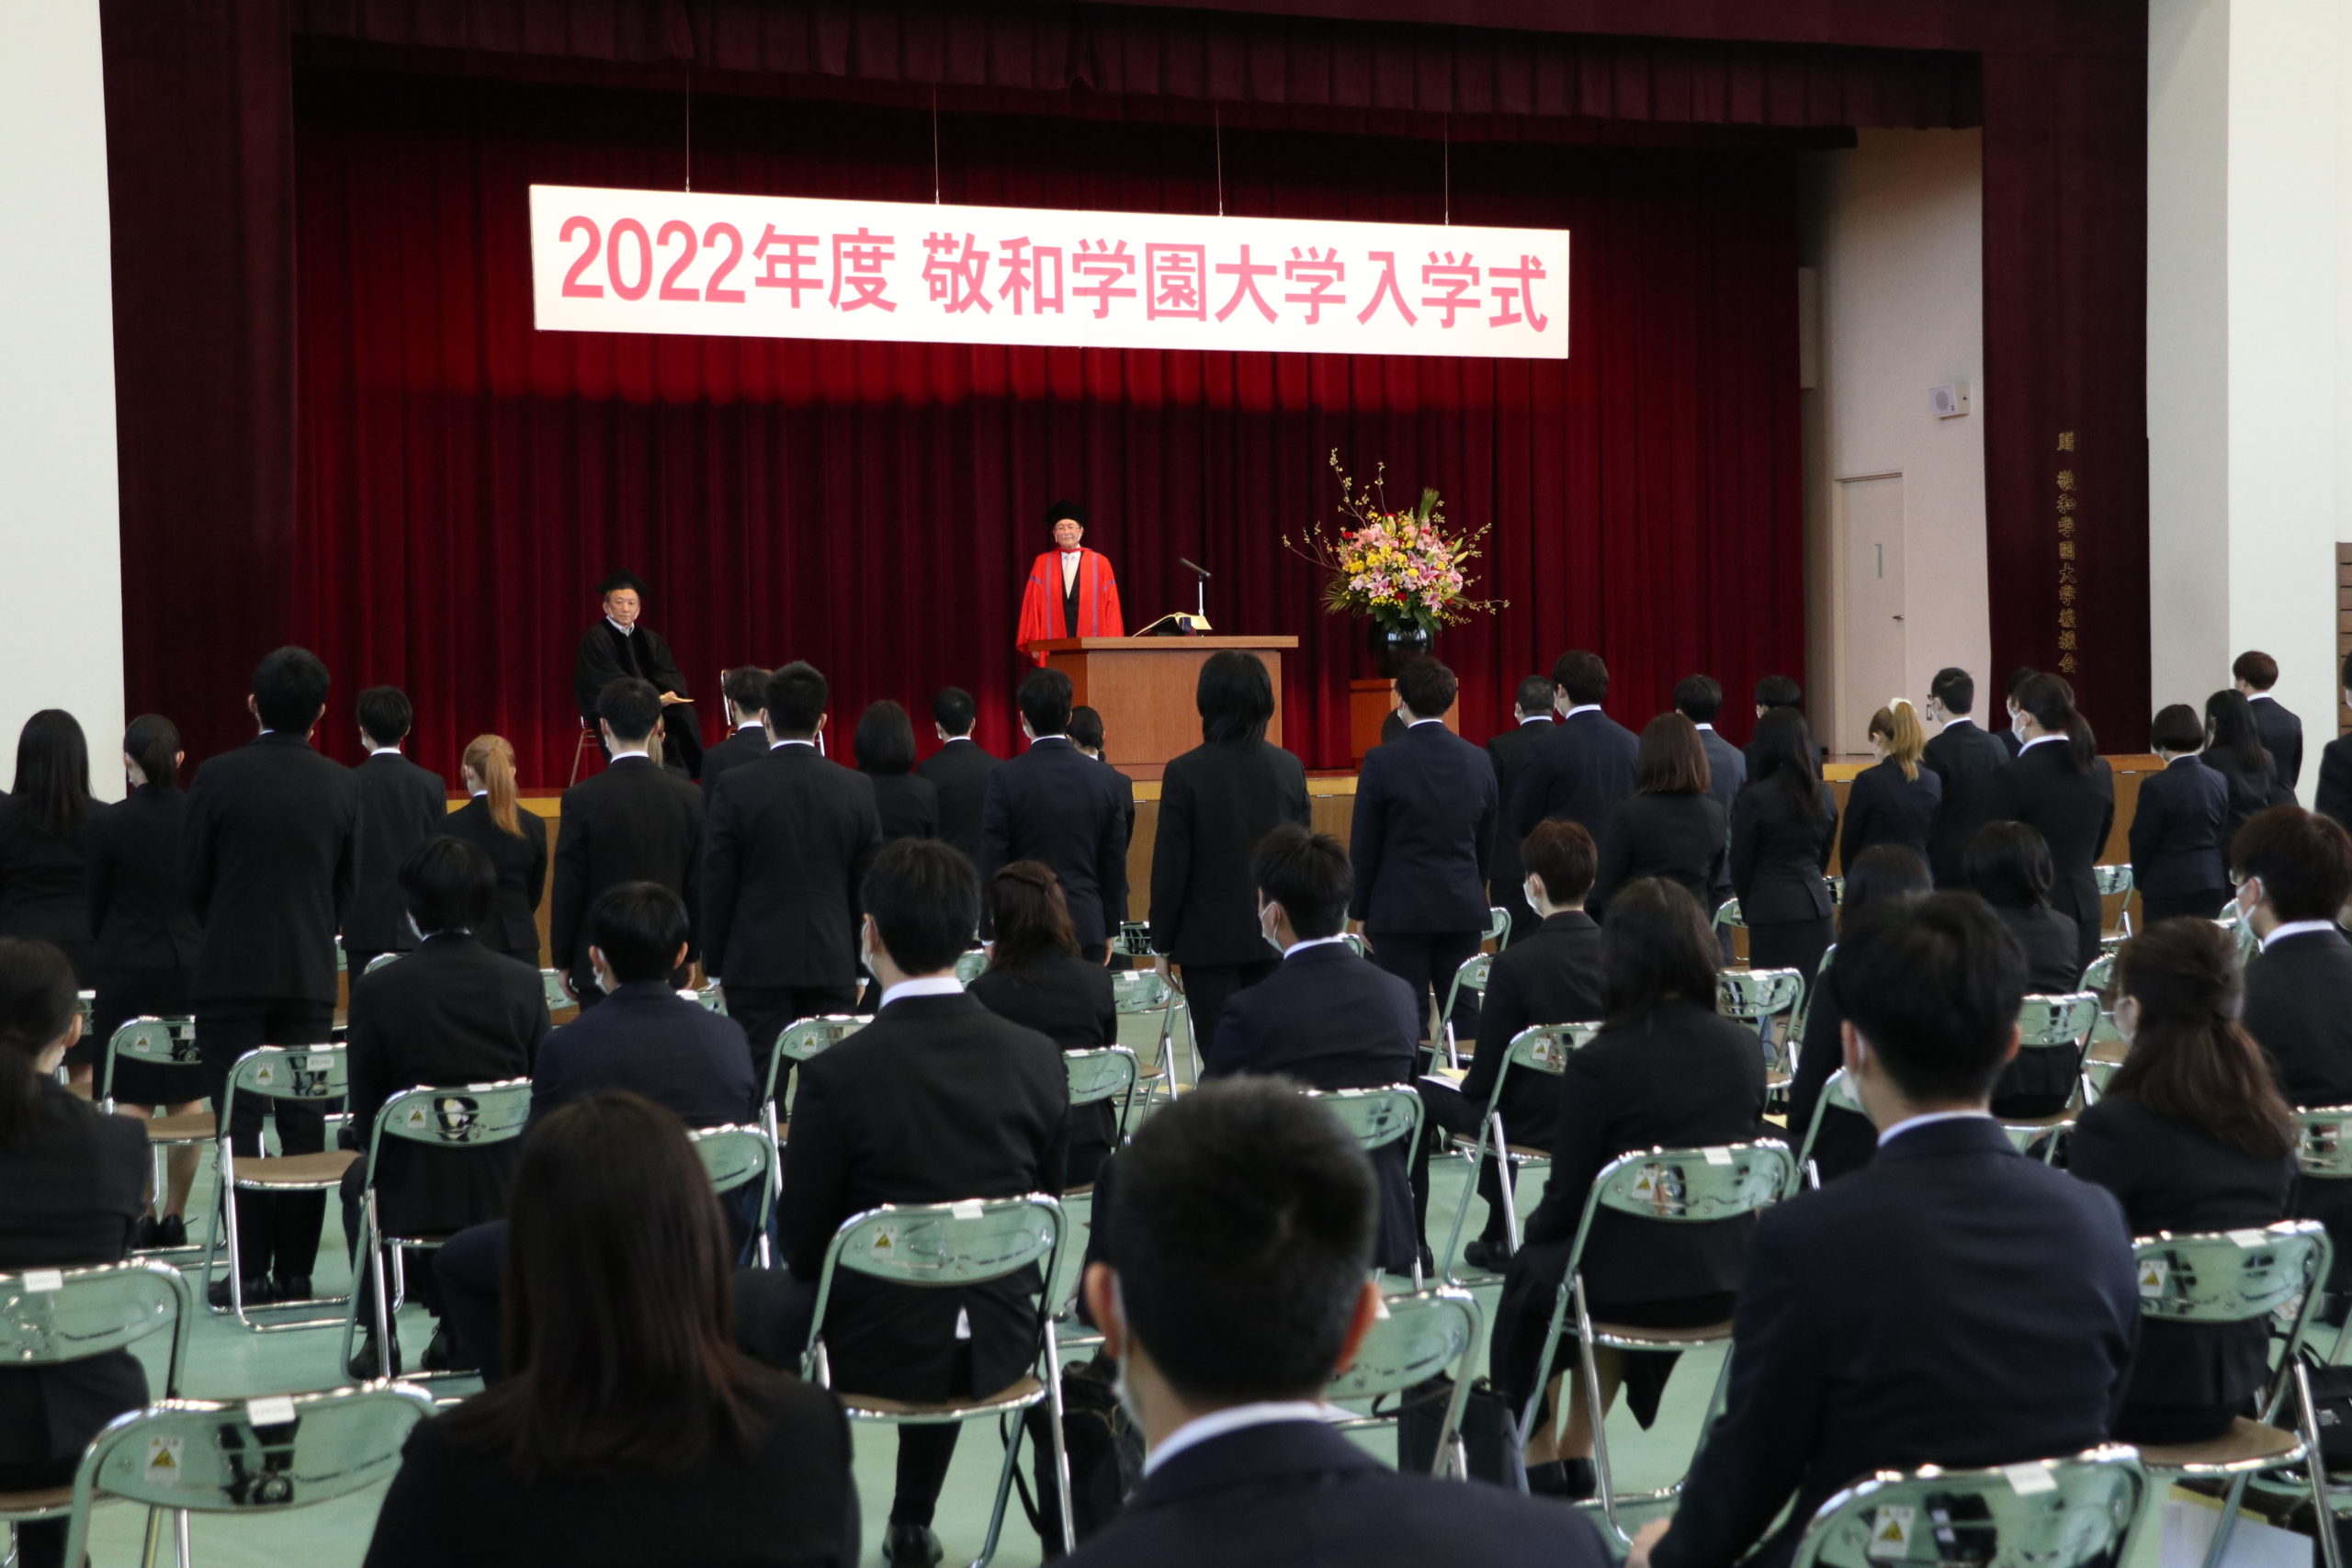 新入生一人ひとりの名前が読み上げられ、山田学長が入学許可を宣言しました